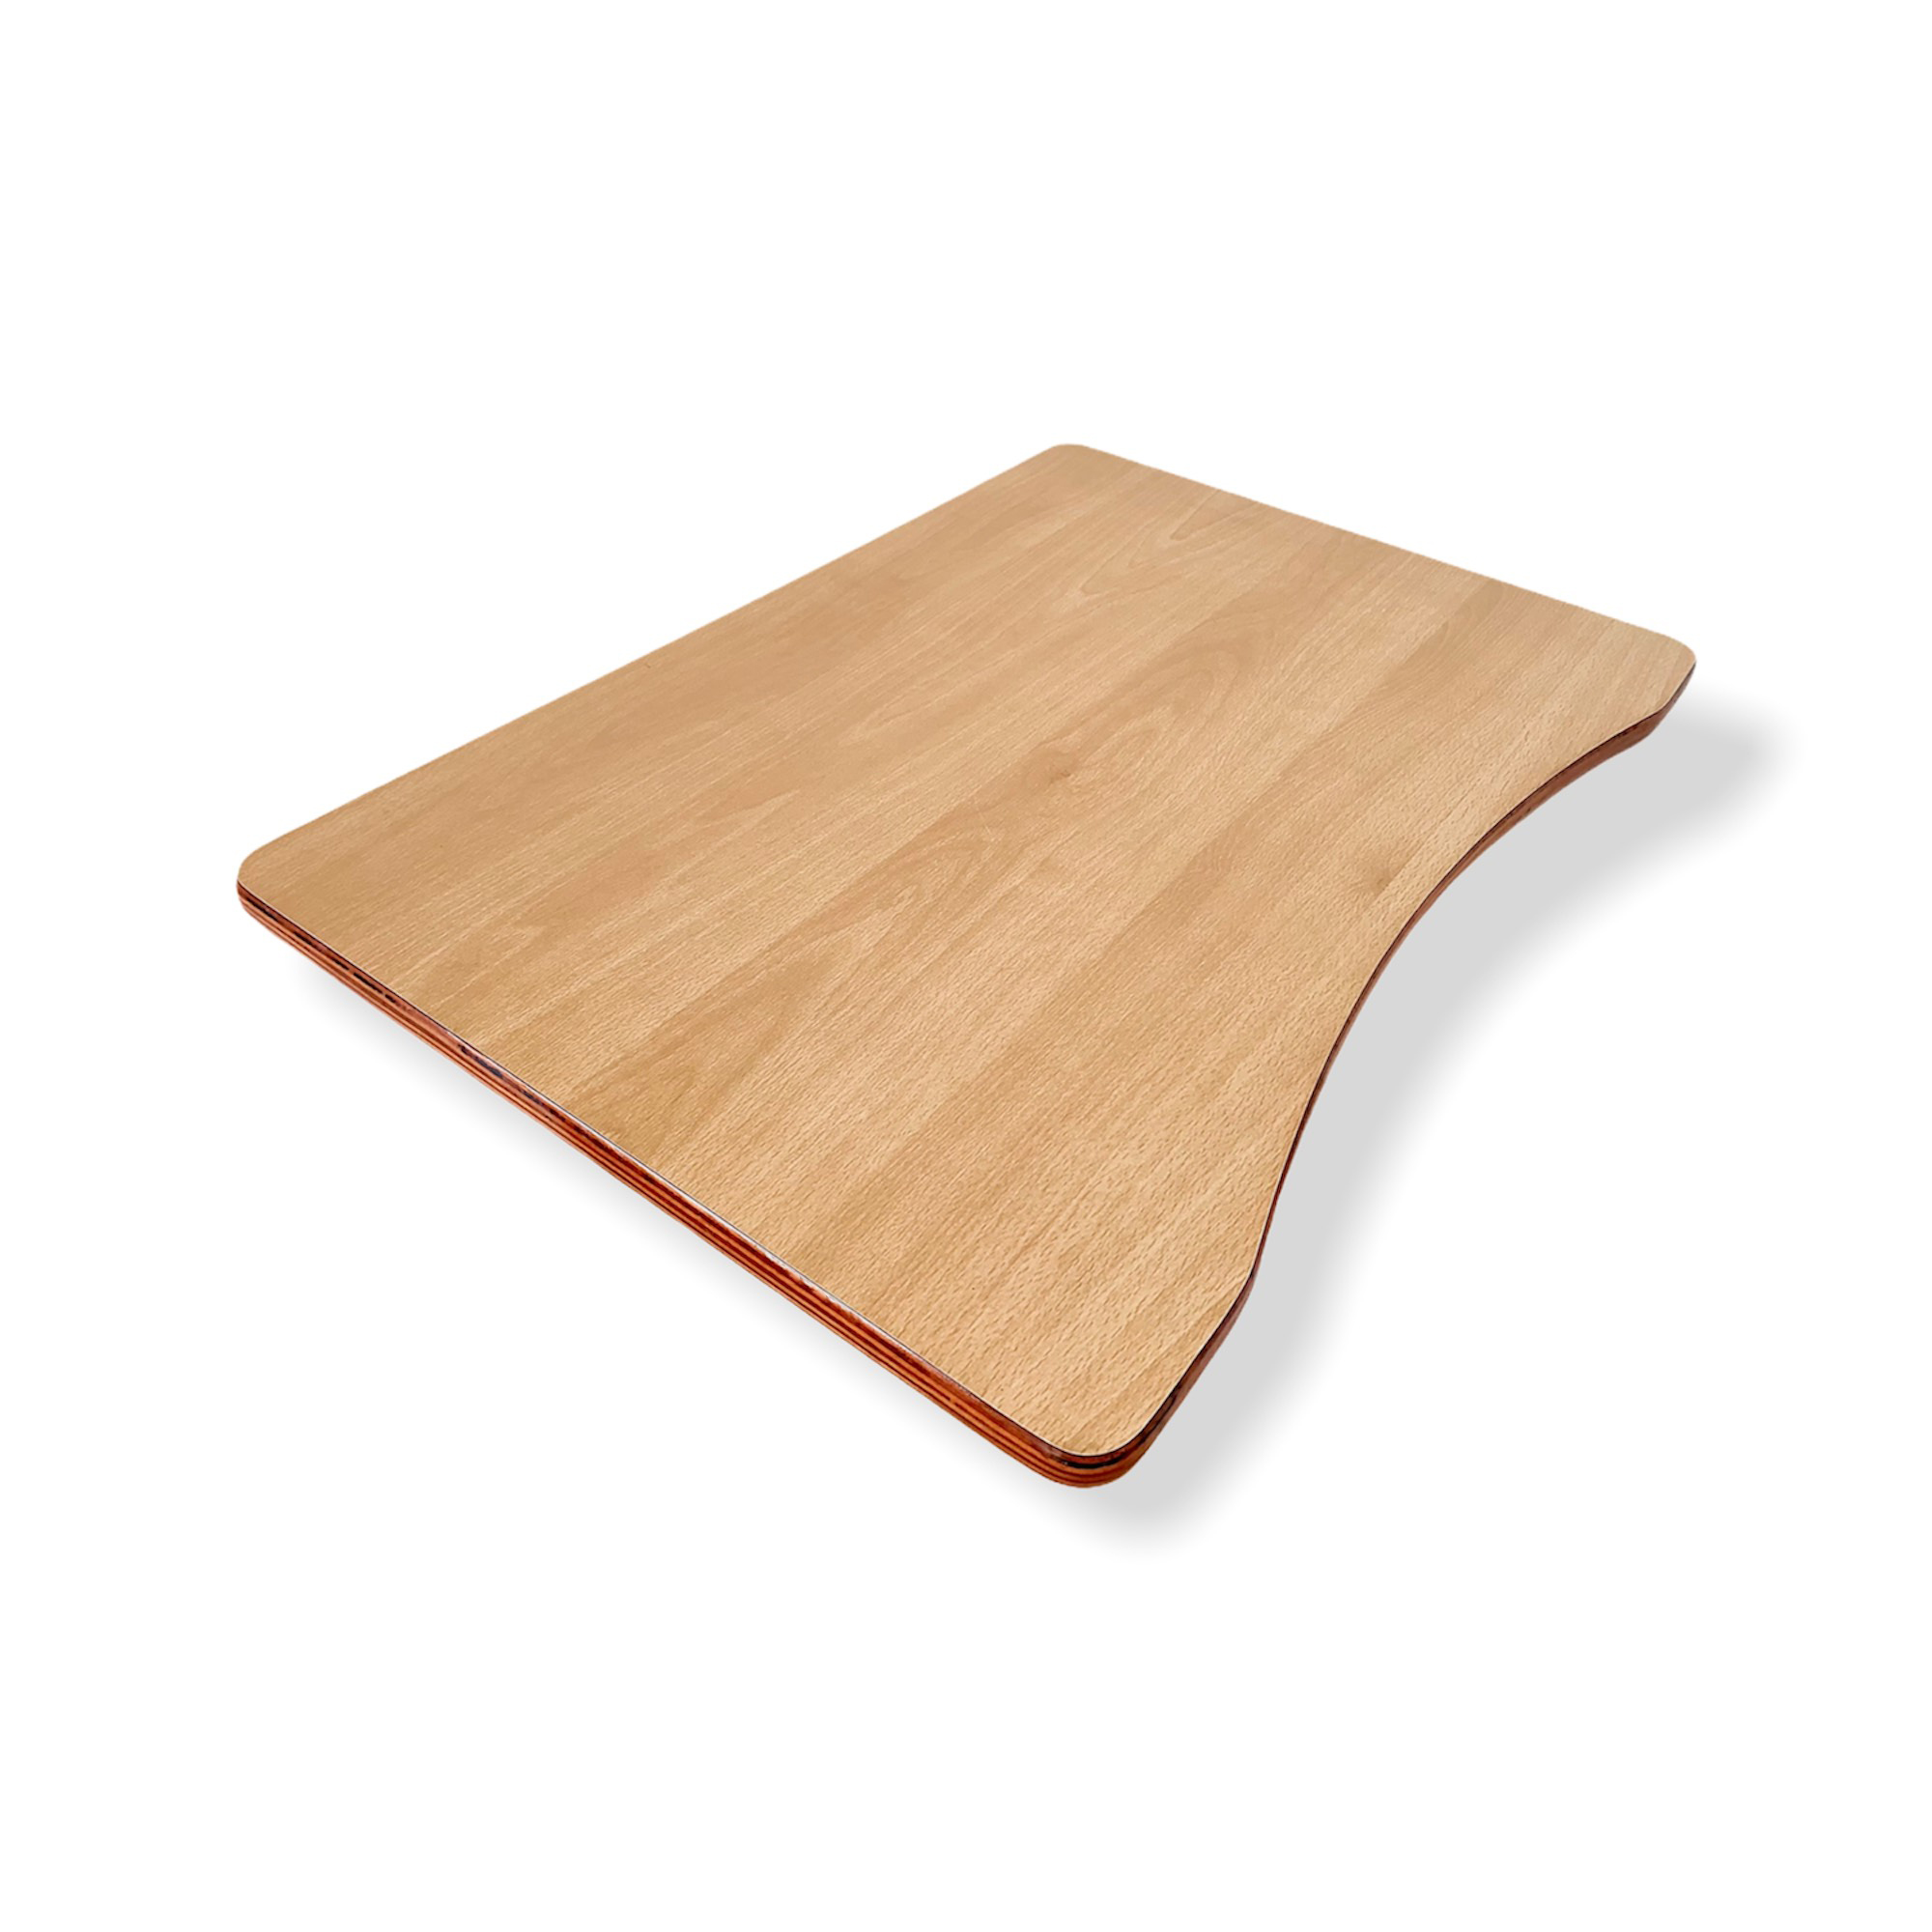 Mặt bàn gổ đẹp uốn viền, 65 x 45 cm, dày 2 cm, Plywood Beech phủ Laminate chống trầy 2 mặt Plyconcept (Không kèm chân bàn)